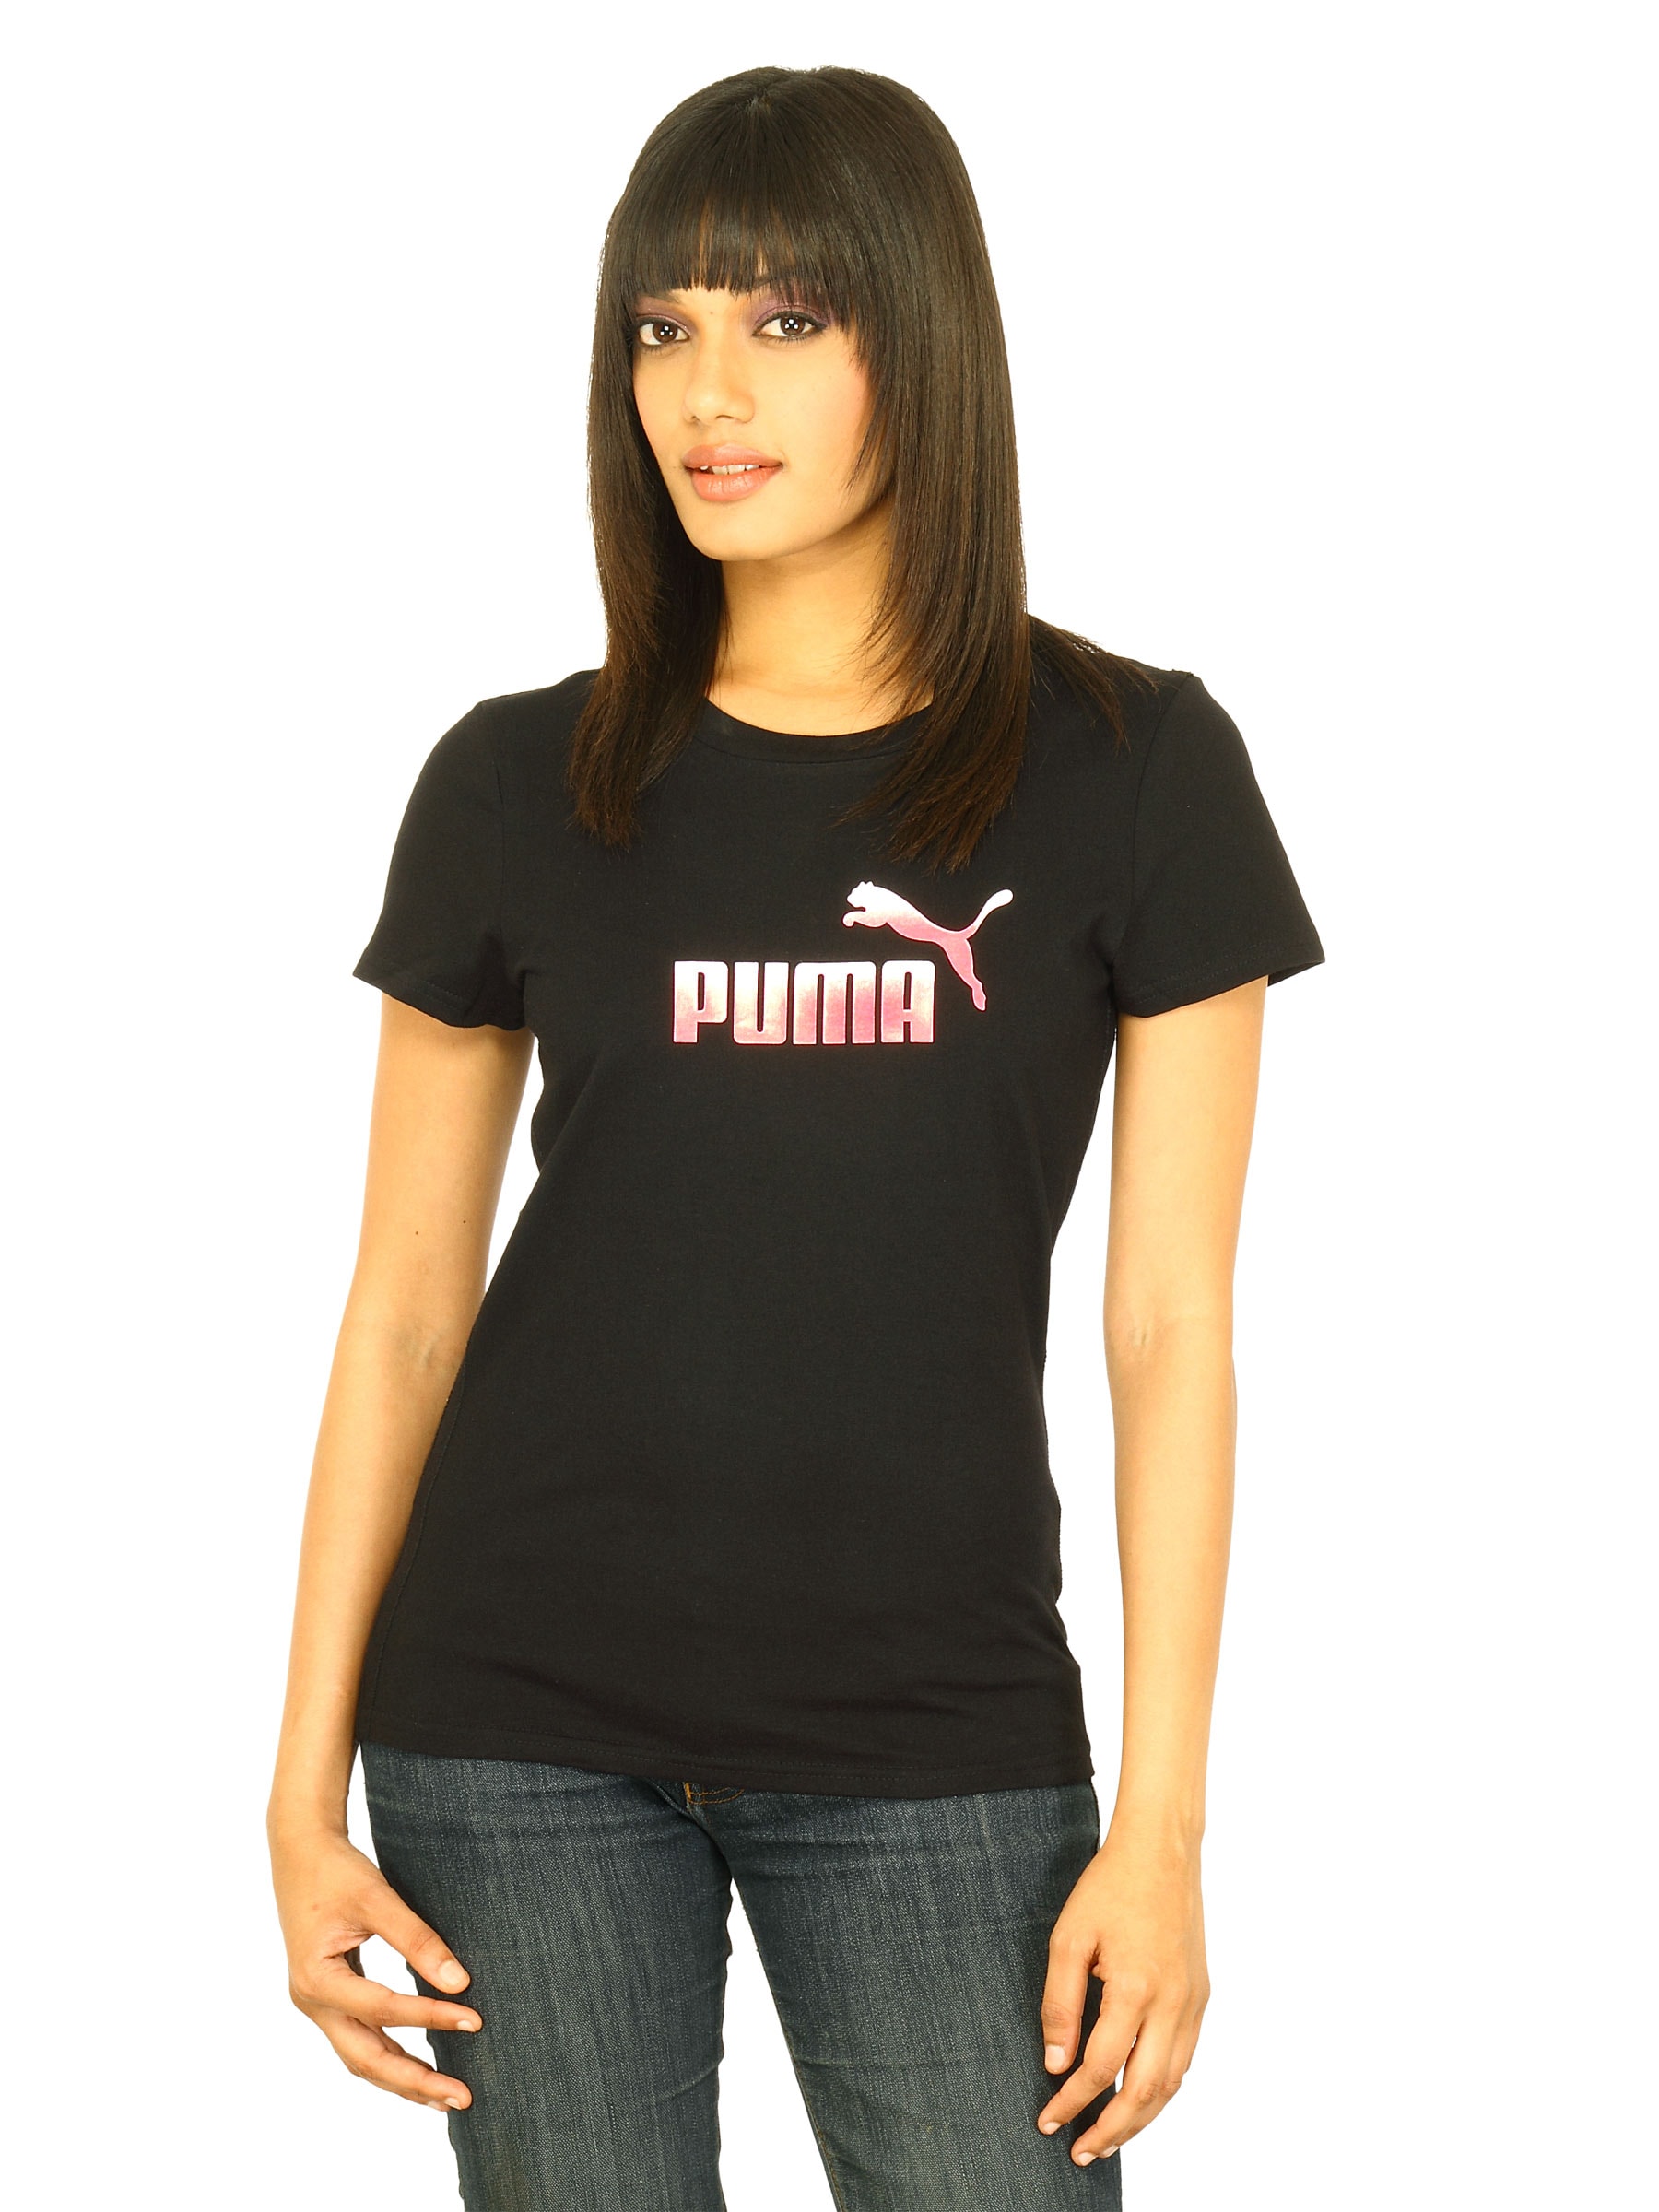 Puma Women Large logo tee Black Tshirts